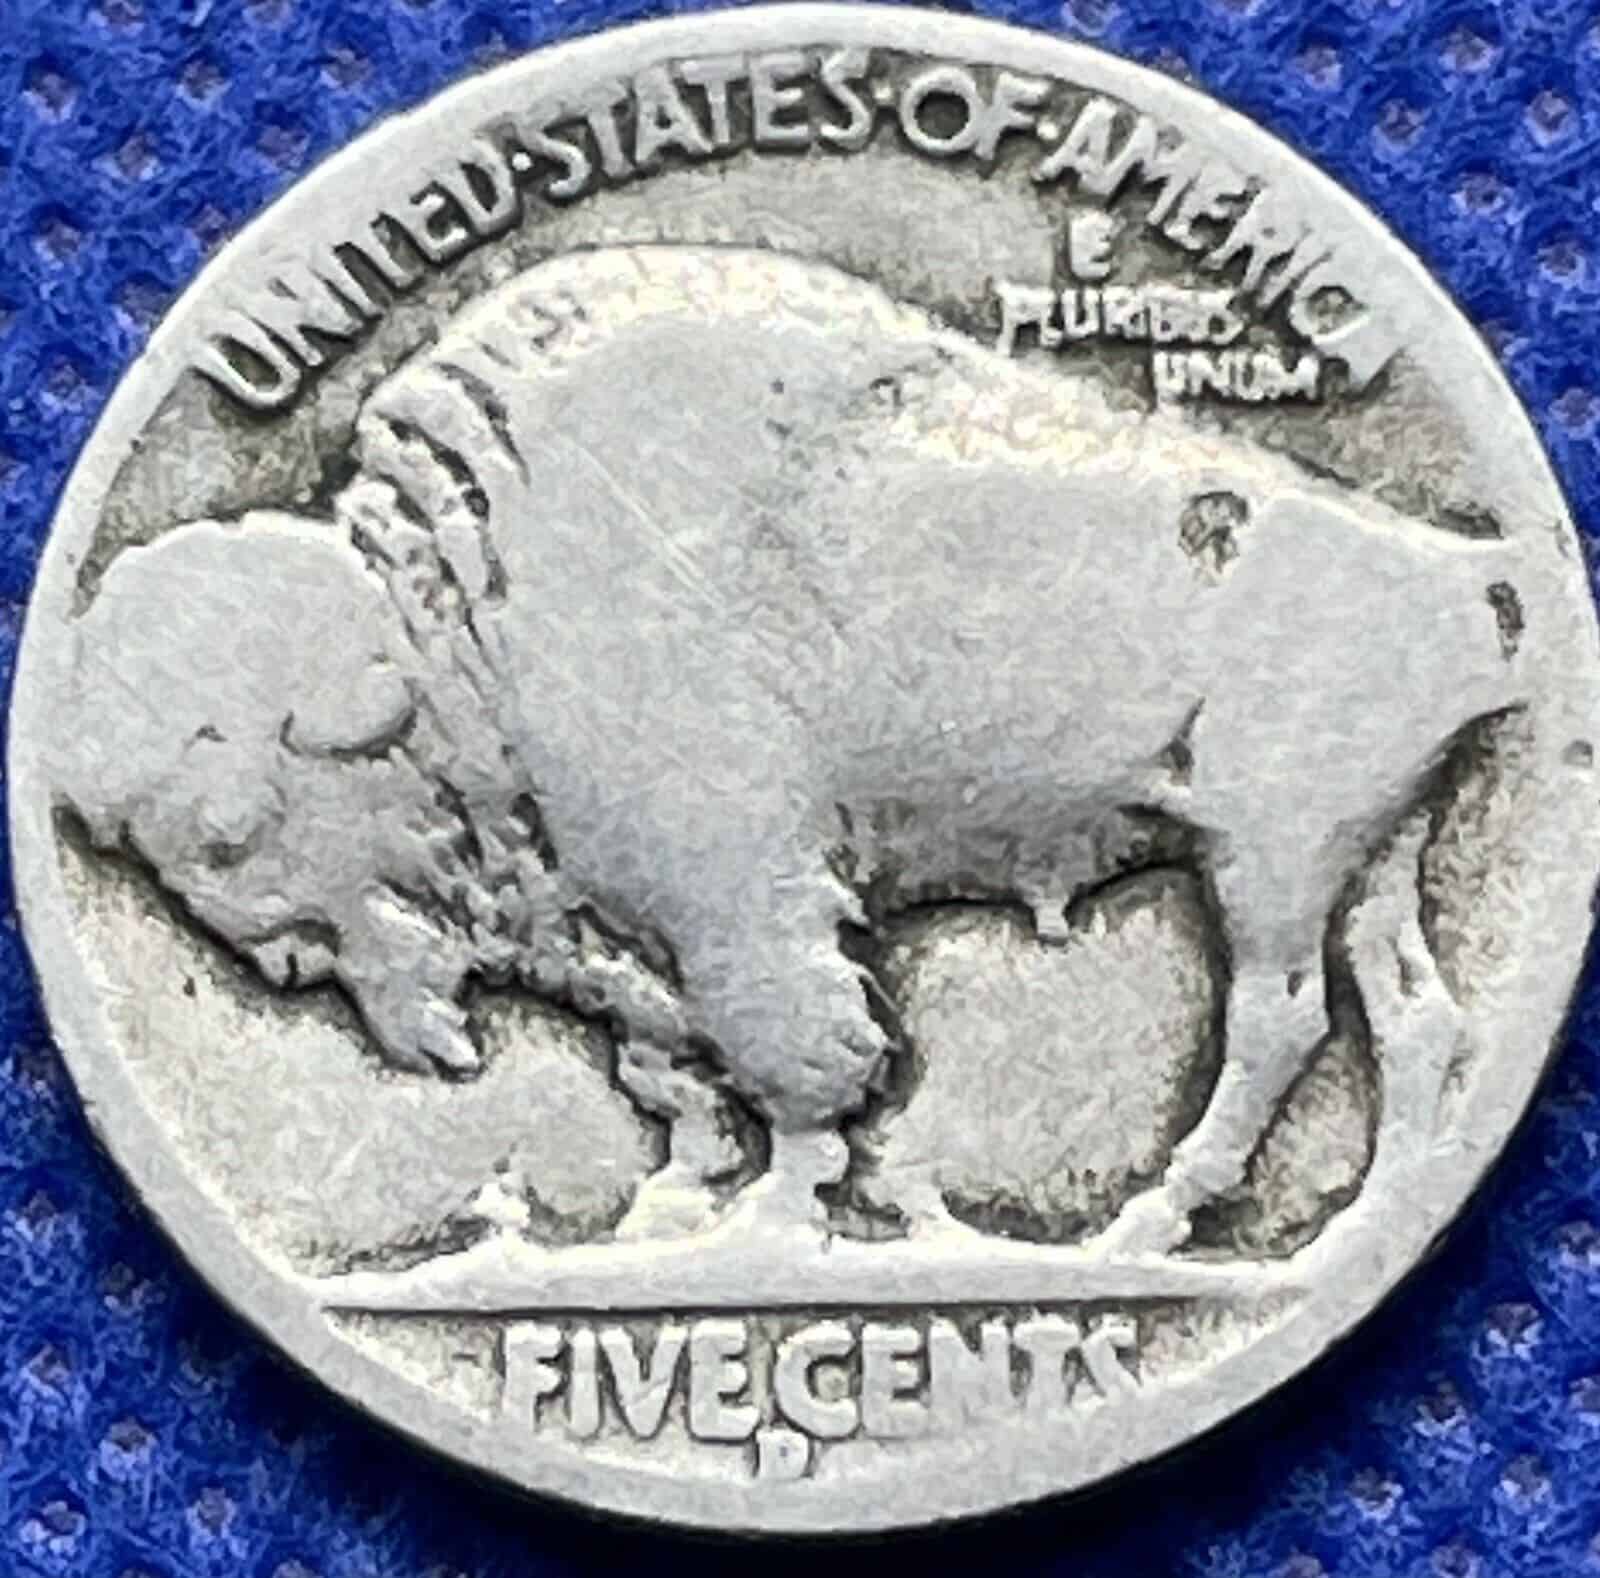 1936 Buffalo Nickel Double Die